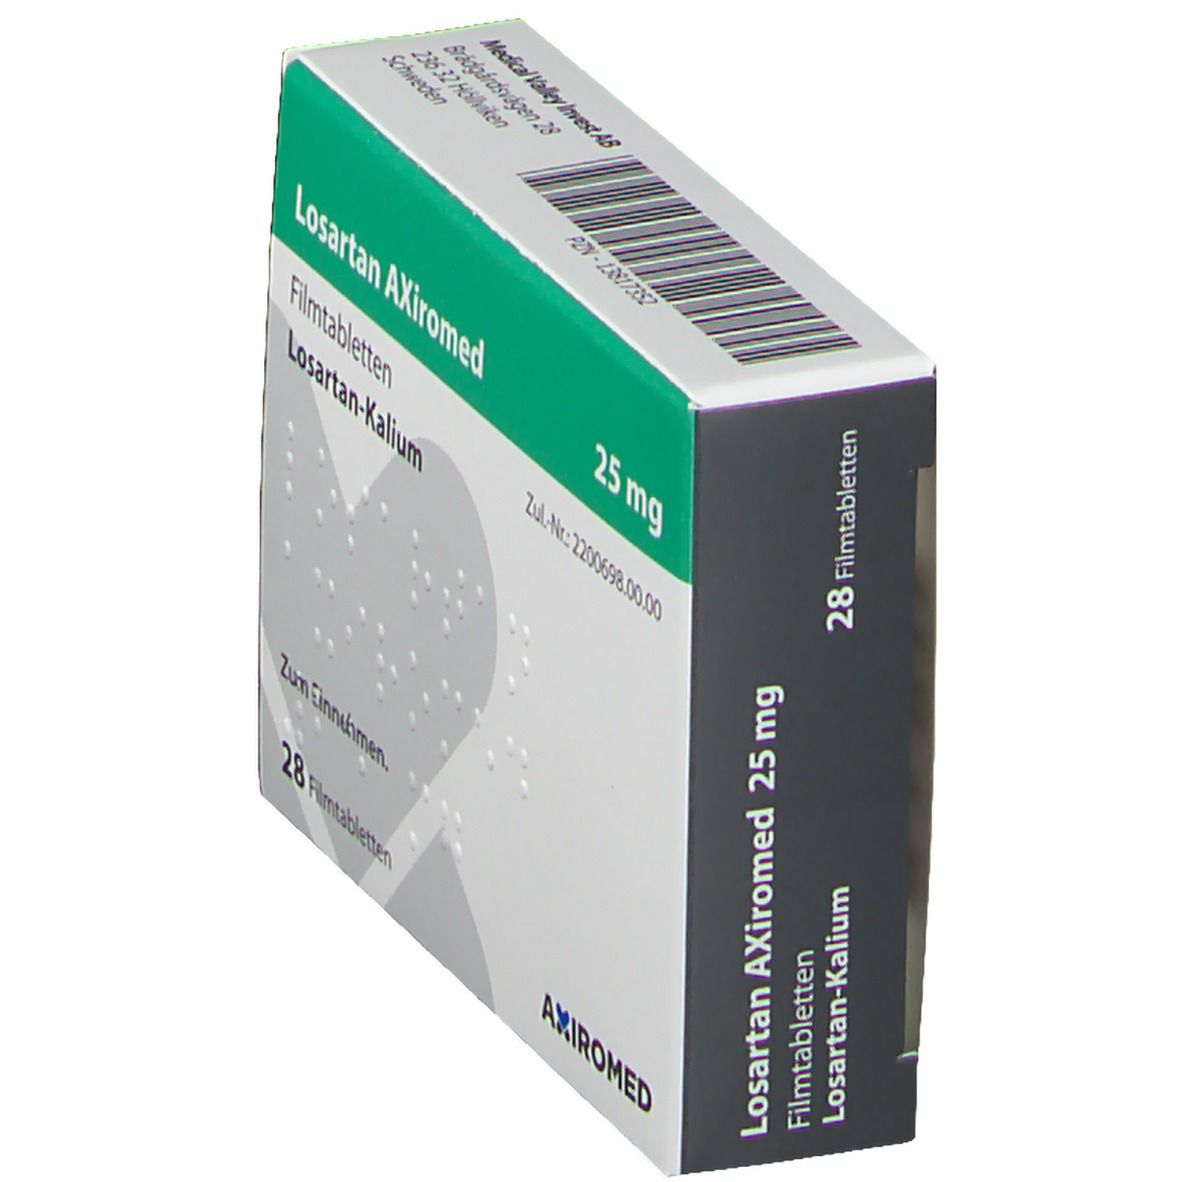 Losartan AXiromed 25 mg